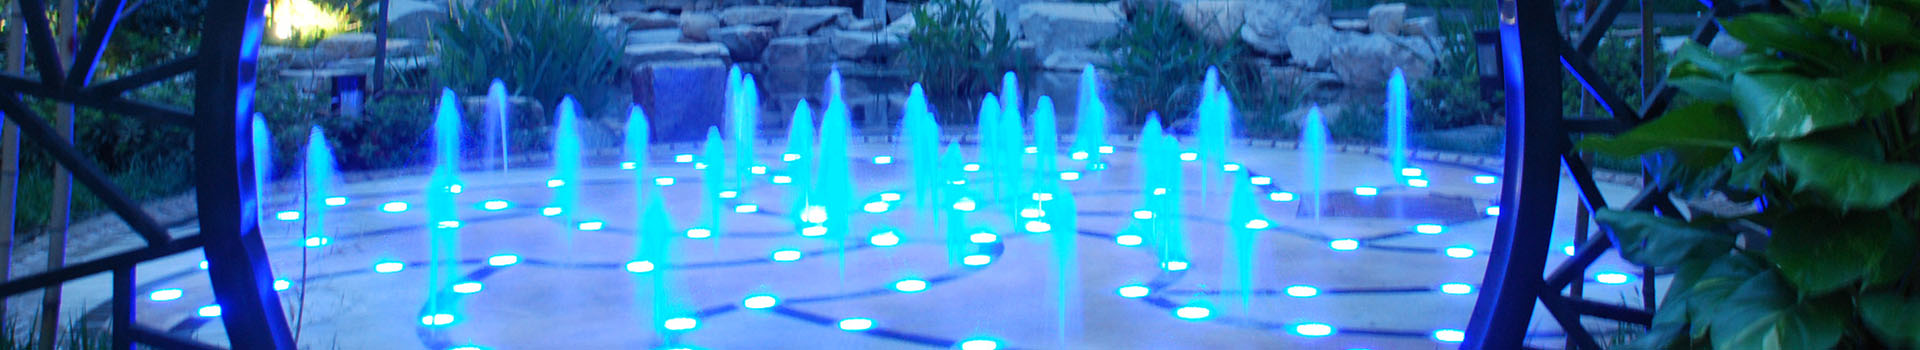 喷泉设计在配色方面存在的三个要点